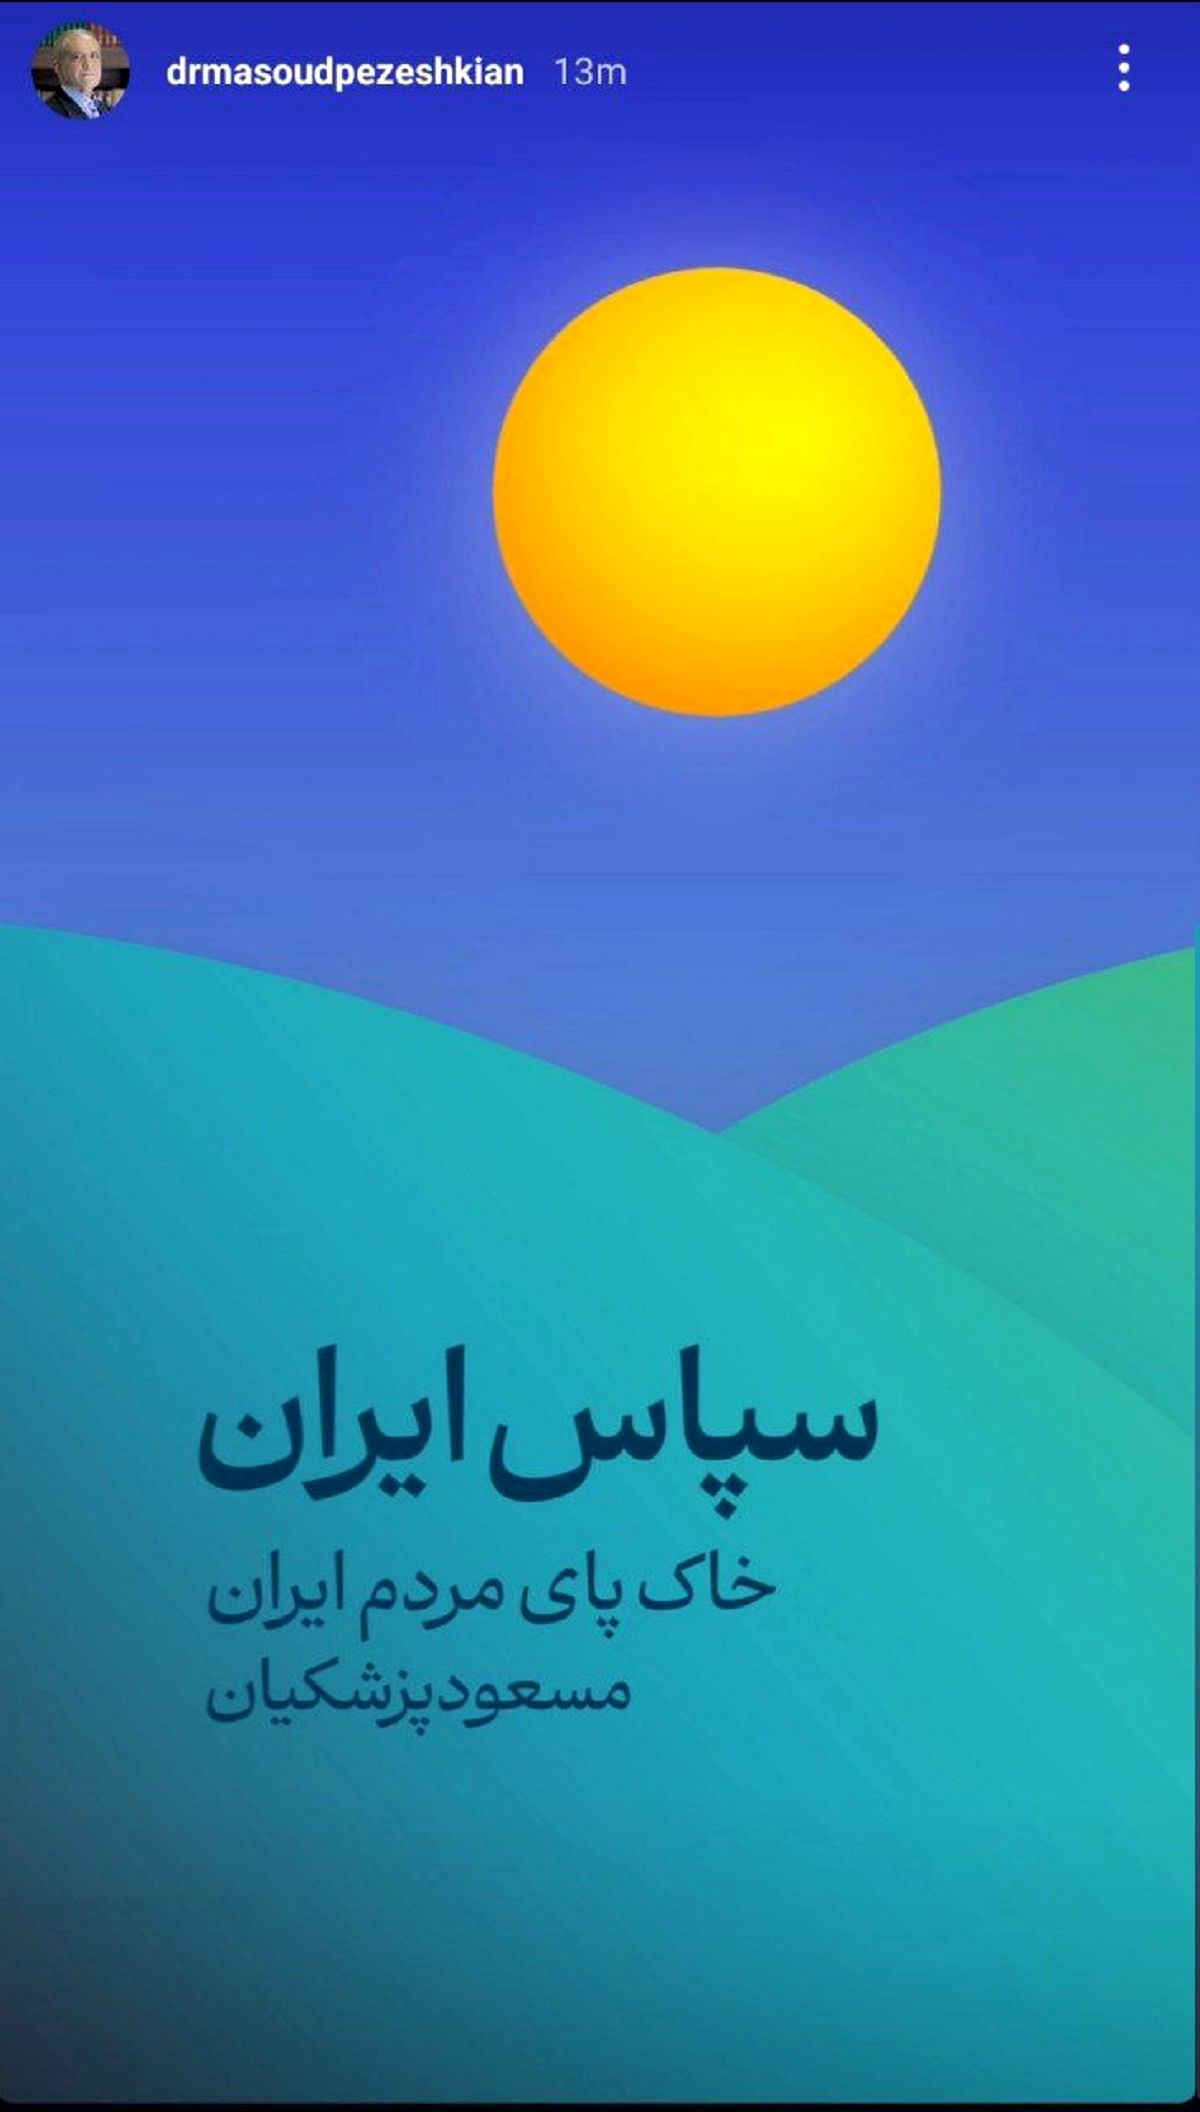 منتخب مردم: سپاس ایران / اولین پیام پزشکیان بعد از پیروزی در انتخابات